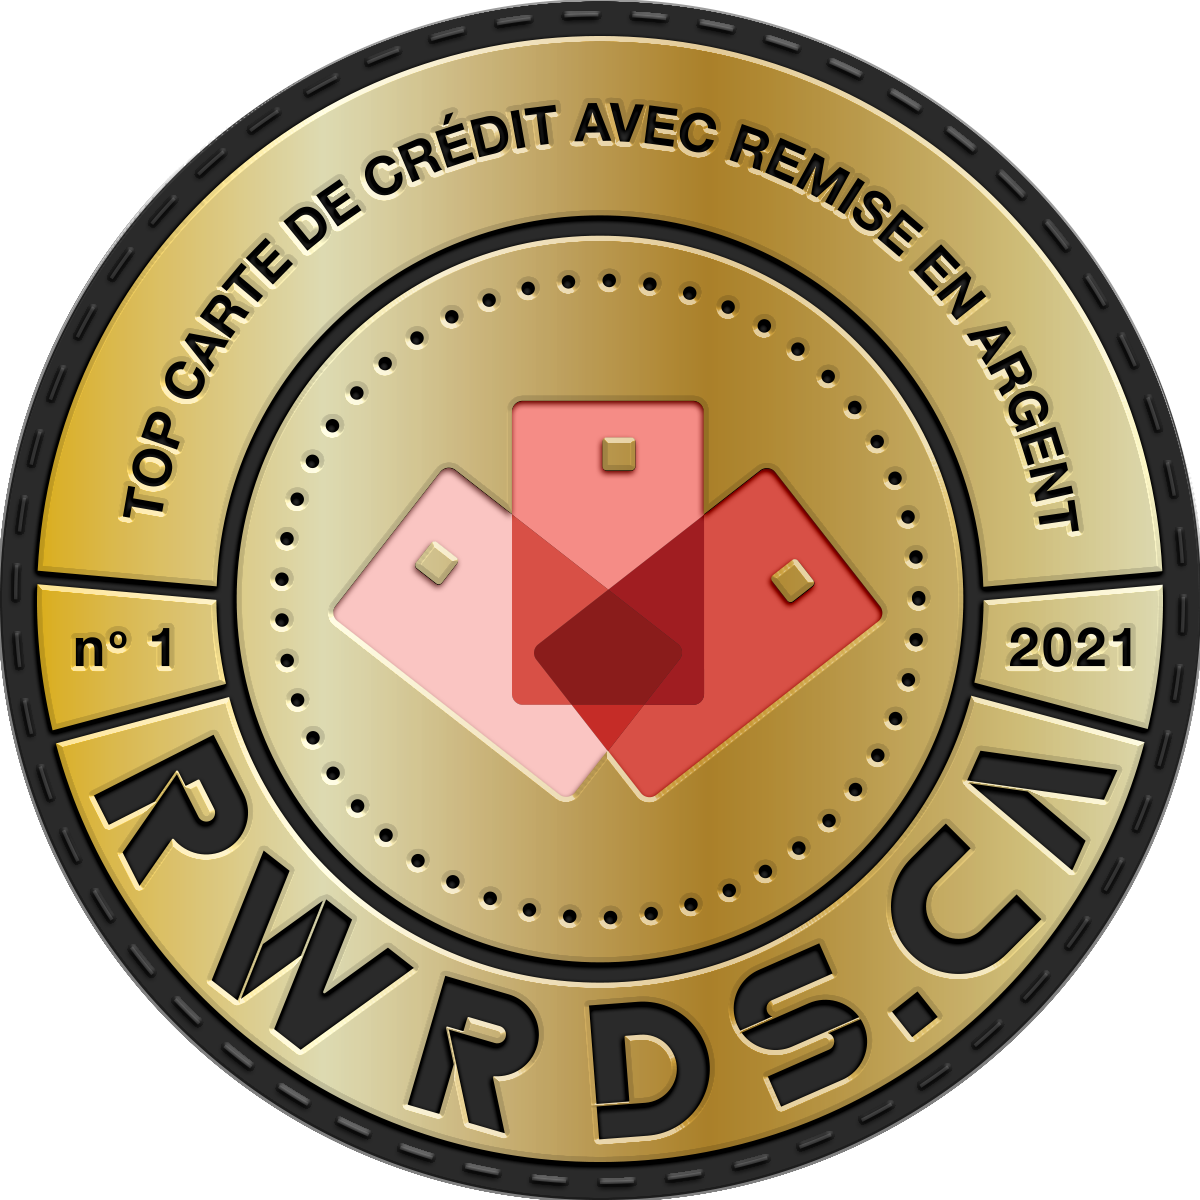 Logo de la meilleure carte de crédit avec remise en argent en 2021 selon Rewards Canada.